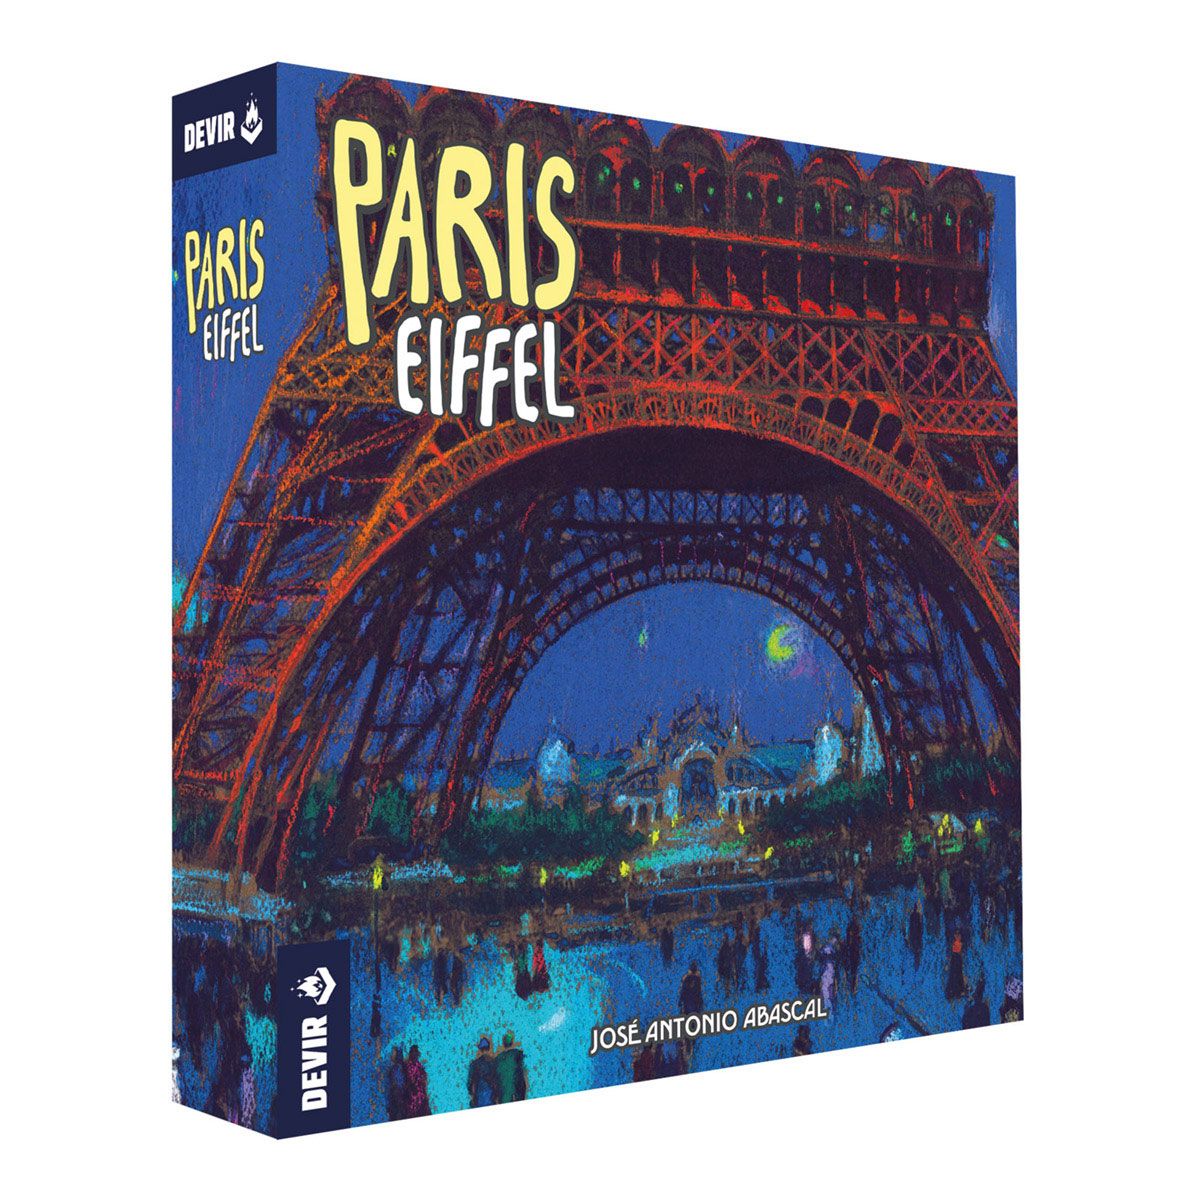 Paris: Eiffel Expansion